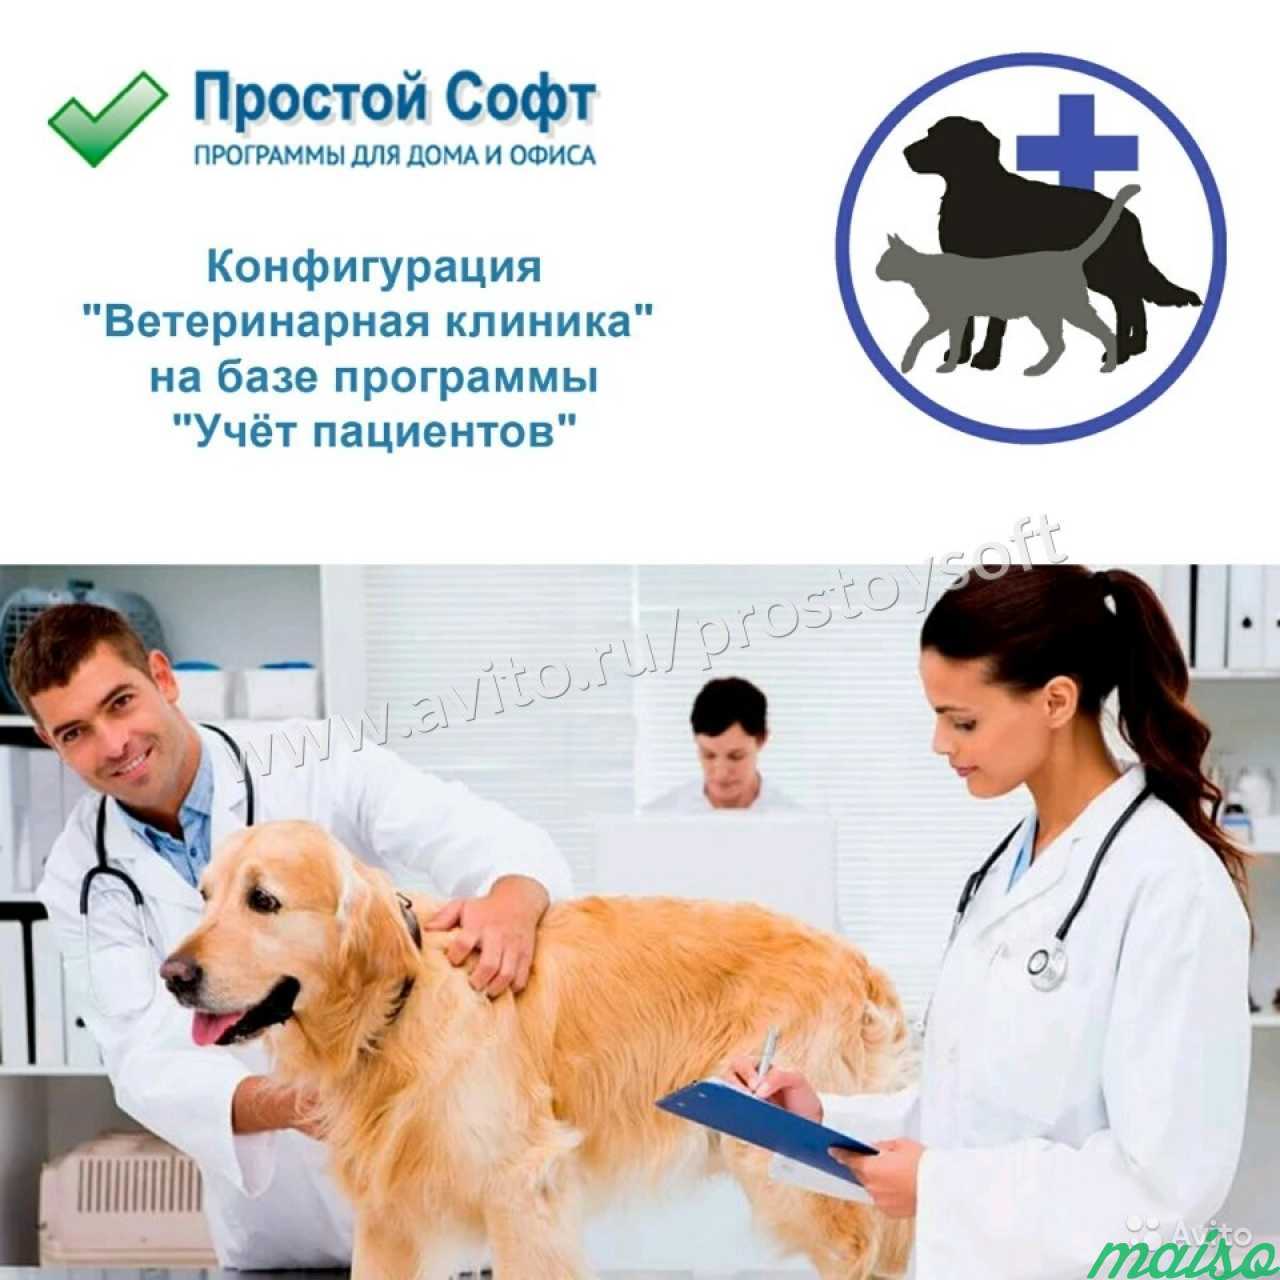 Конфигурация Ветеринарная клиника в Санкт-Петербурге. Фото 1